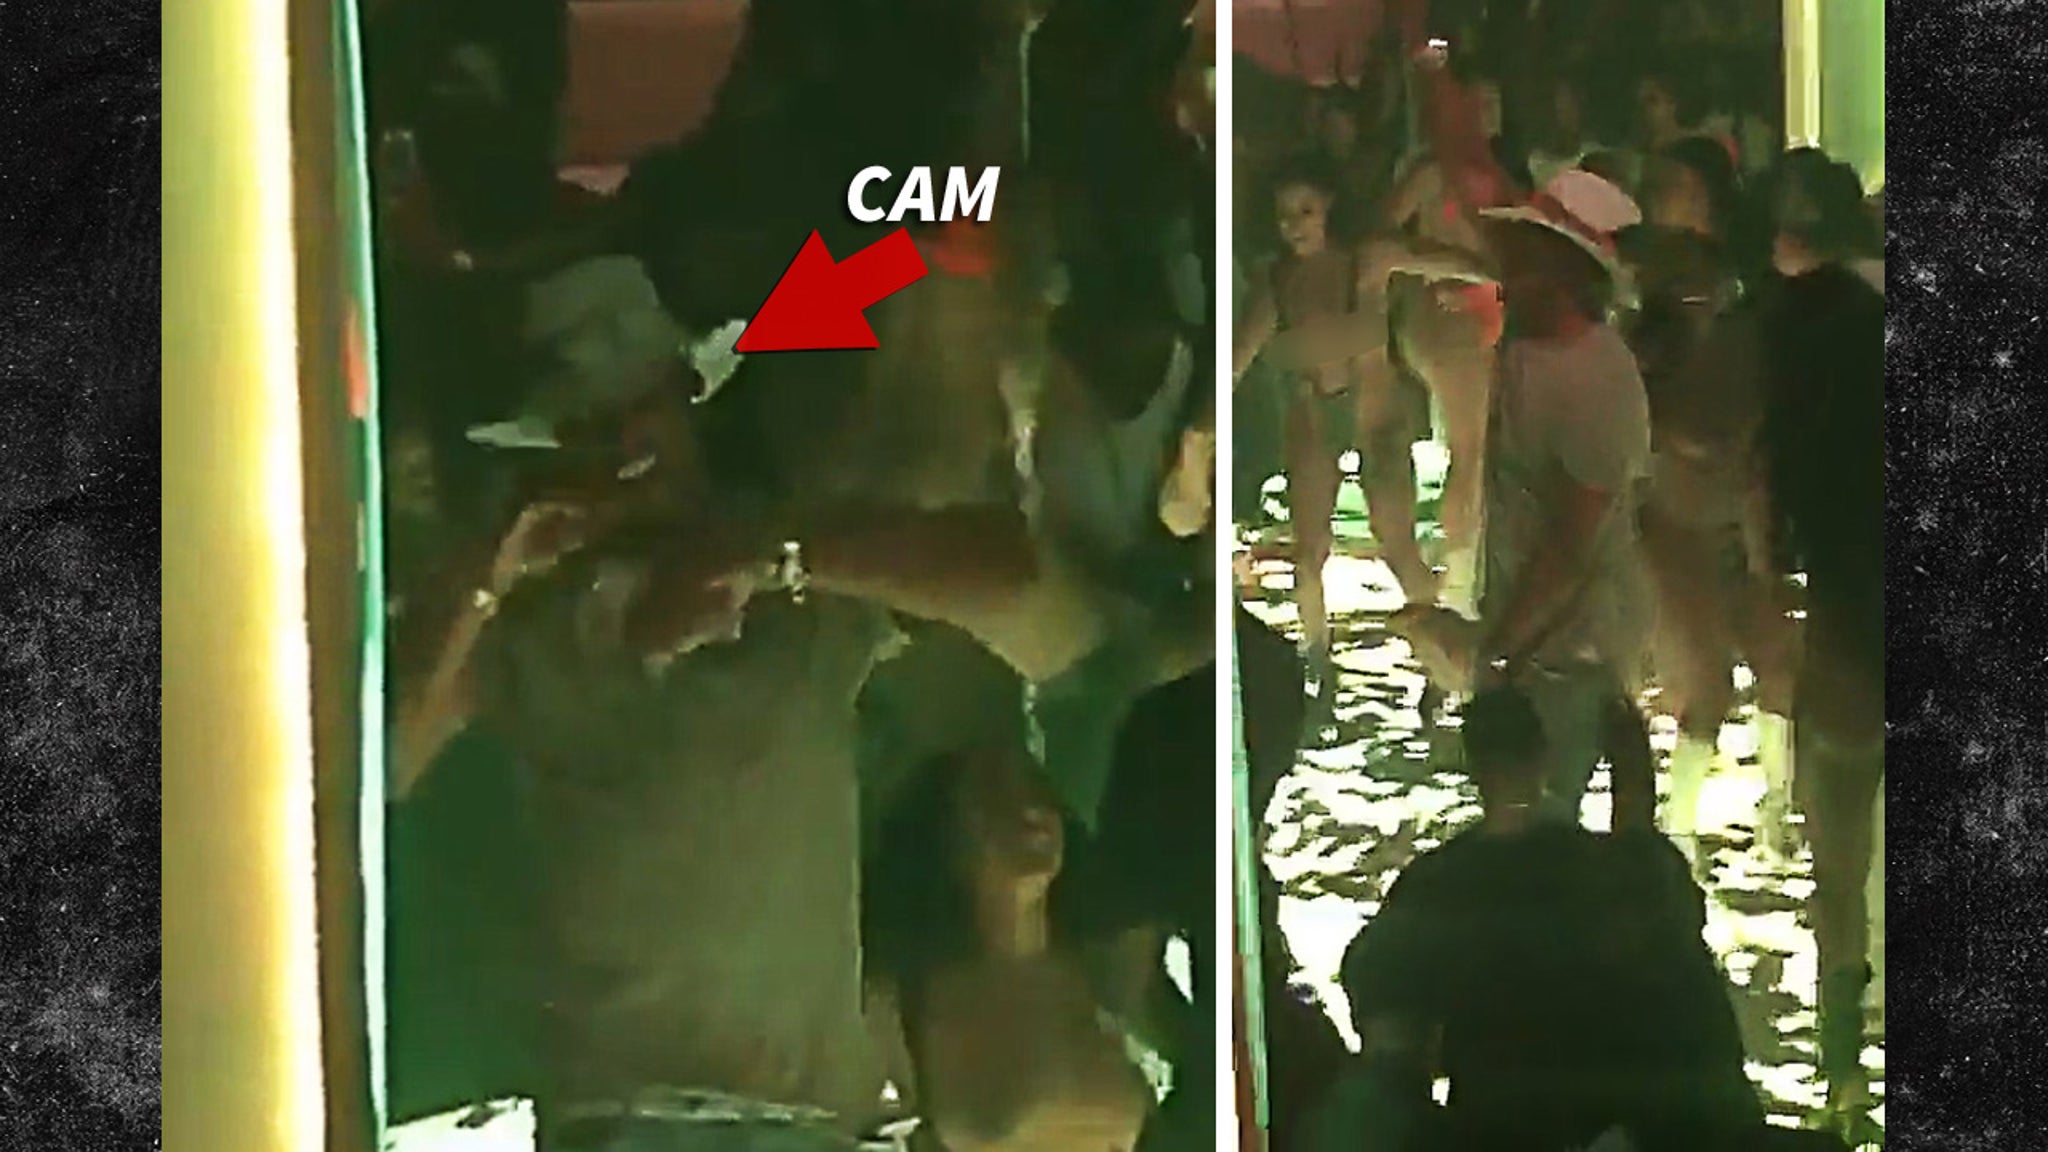 Live stripclub webcams